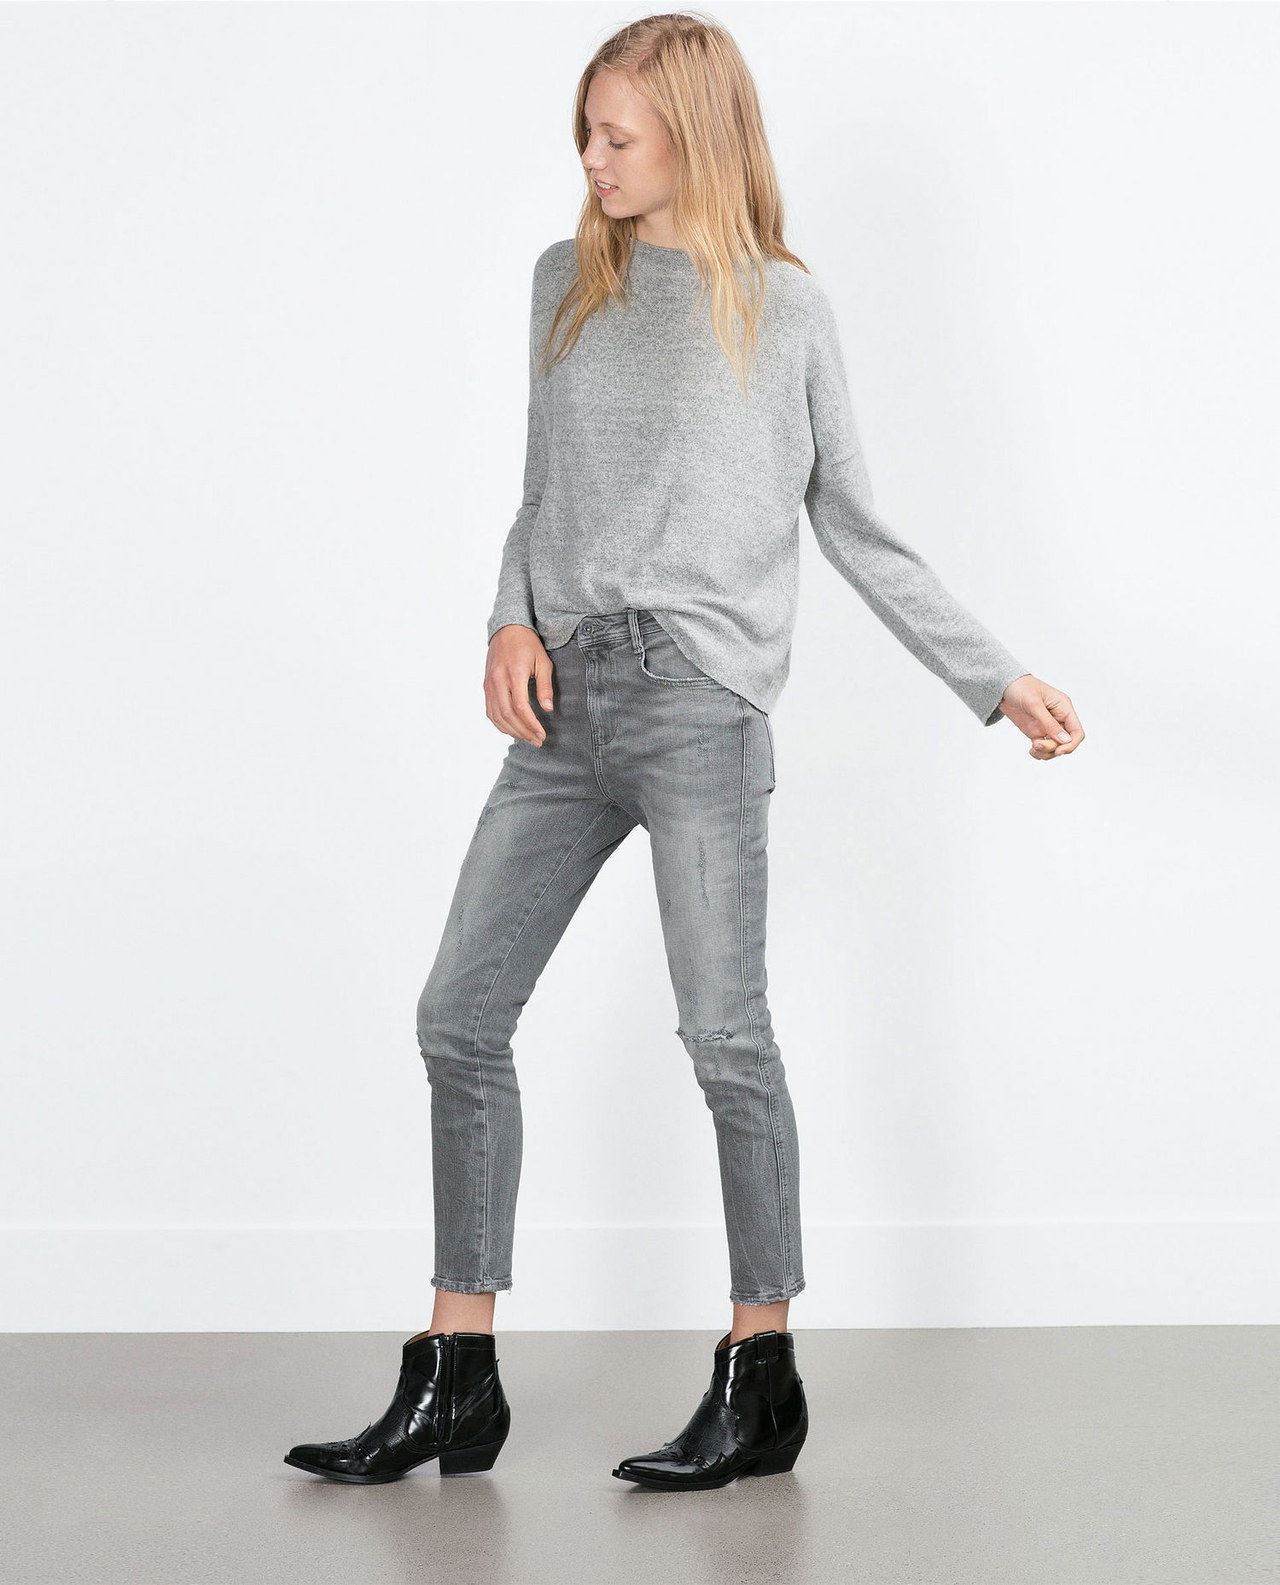 ZARA gray skinny slouchy jeans